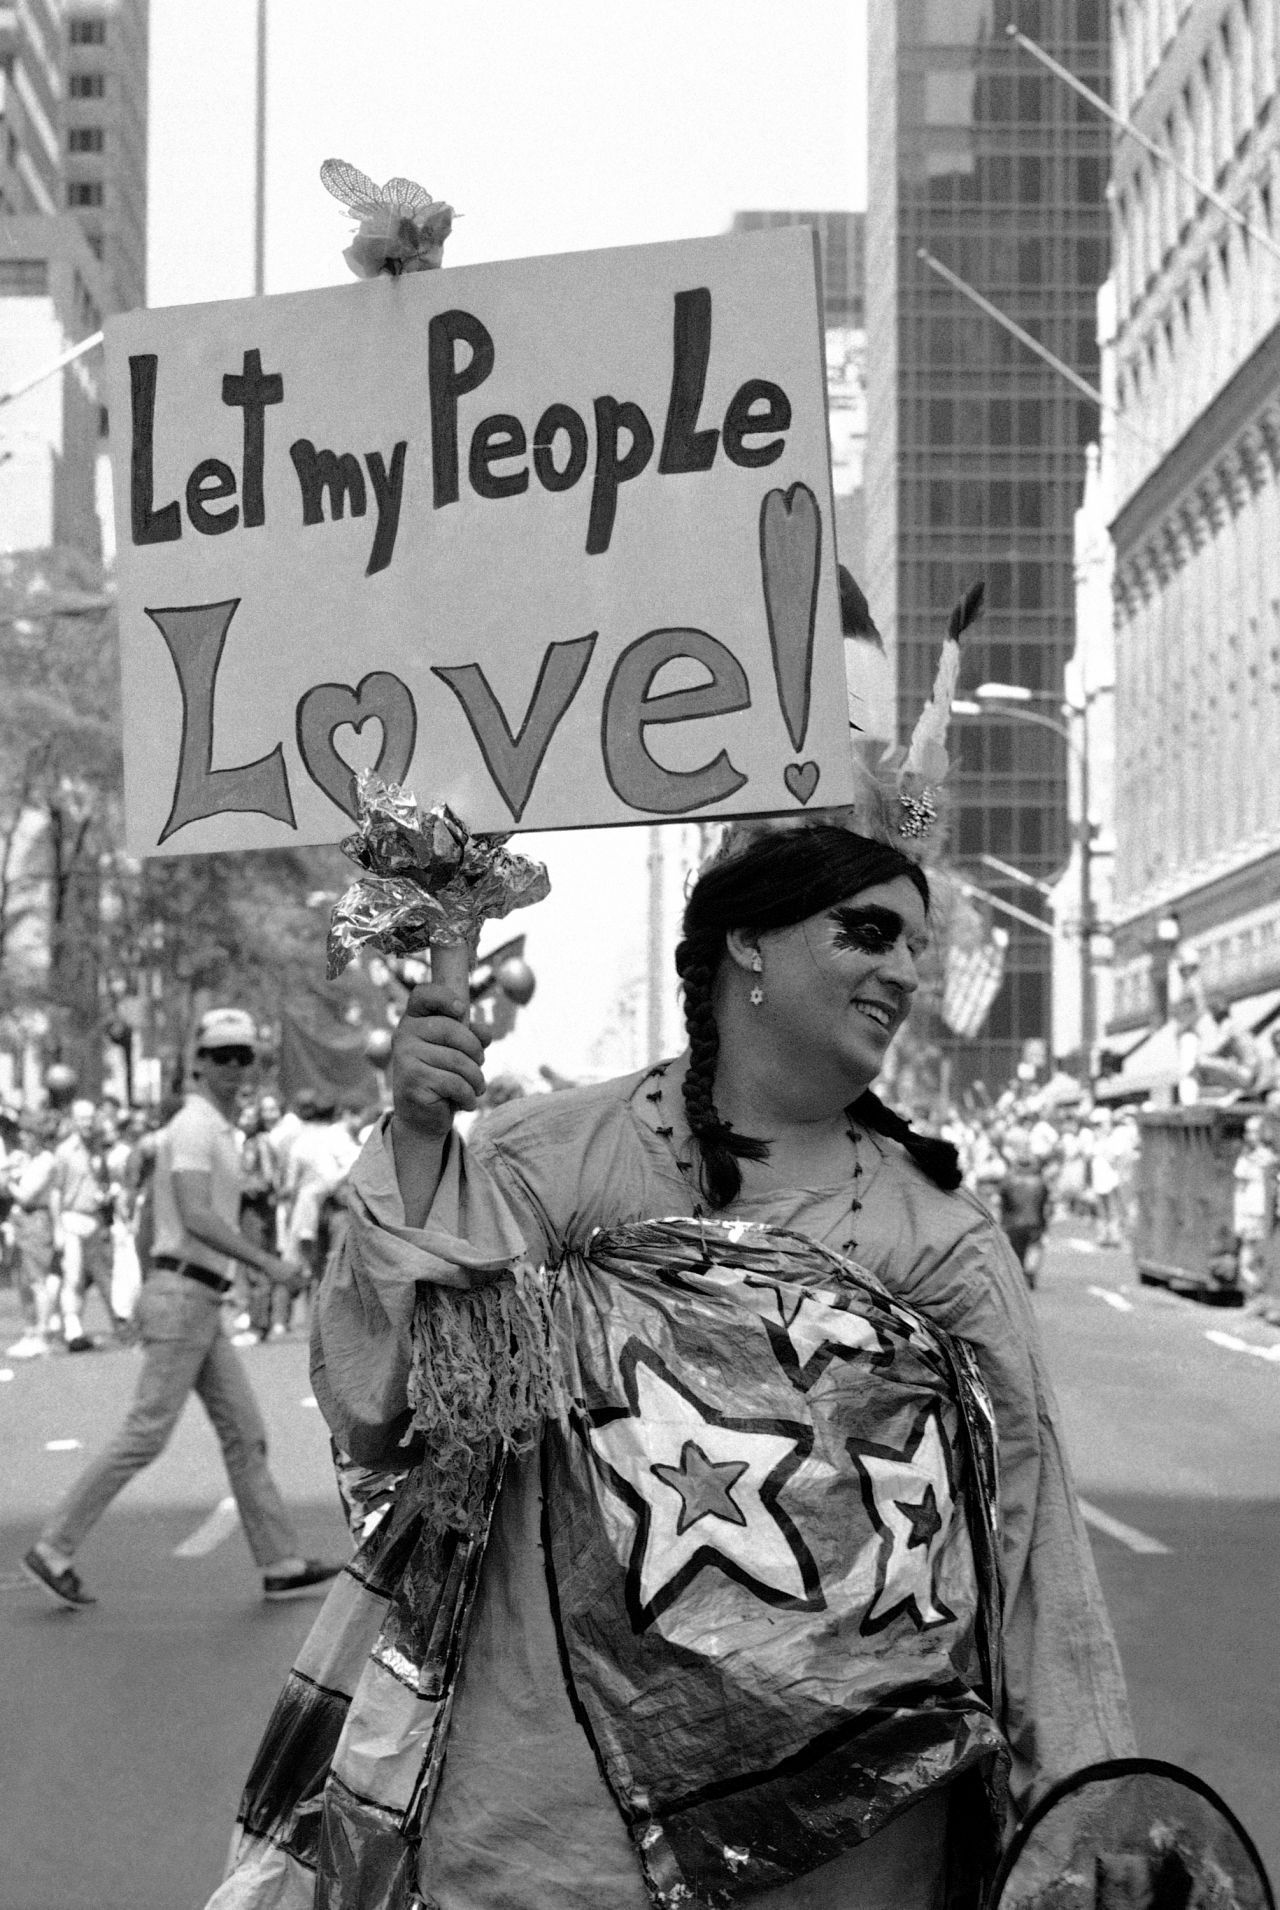 Lasst meine Leute lieben - so lautet die Botschaft dieses Mannes bei der Pride Day Parade 1981 in New York.